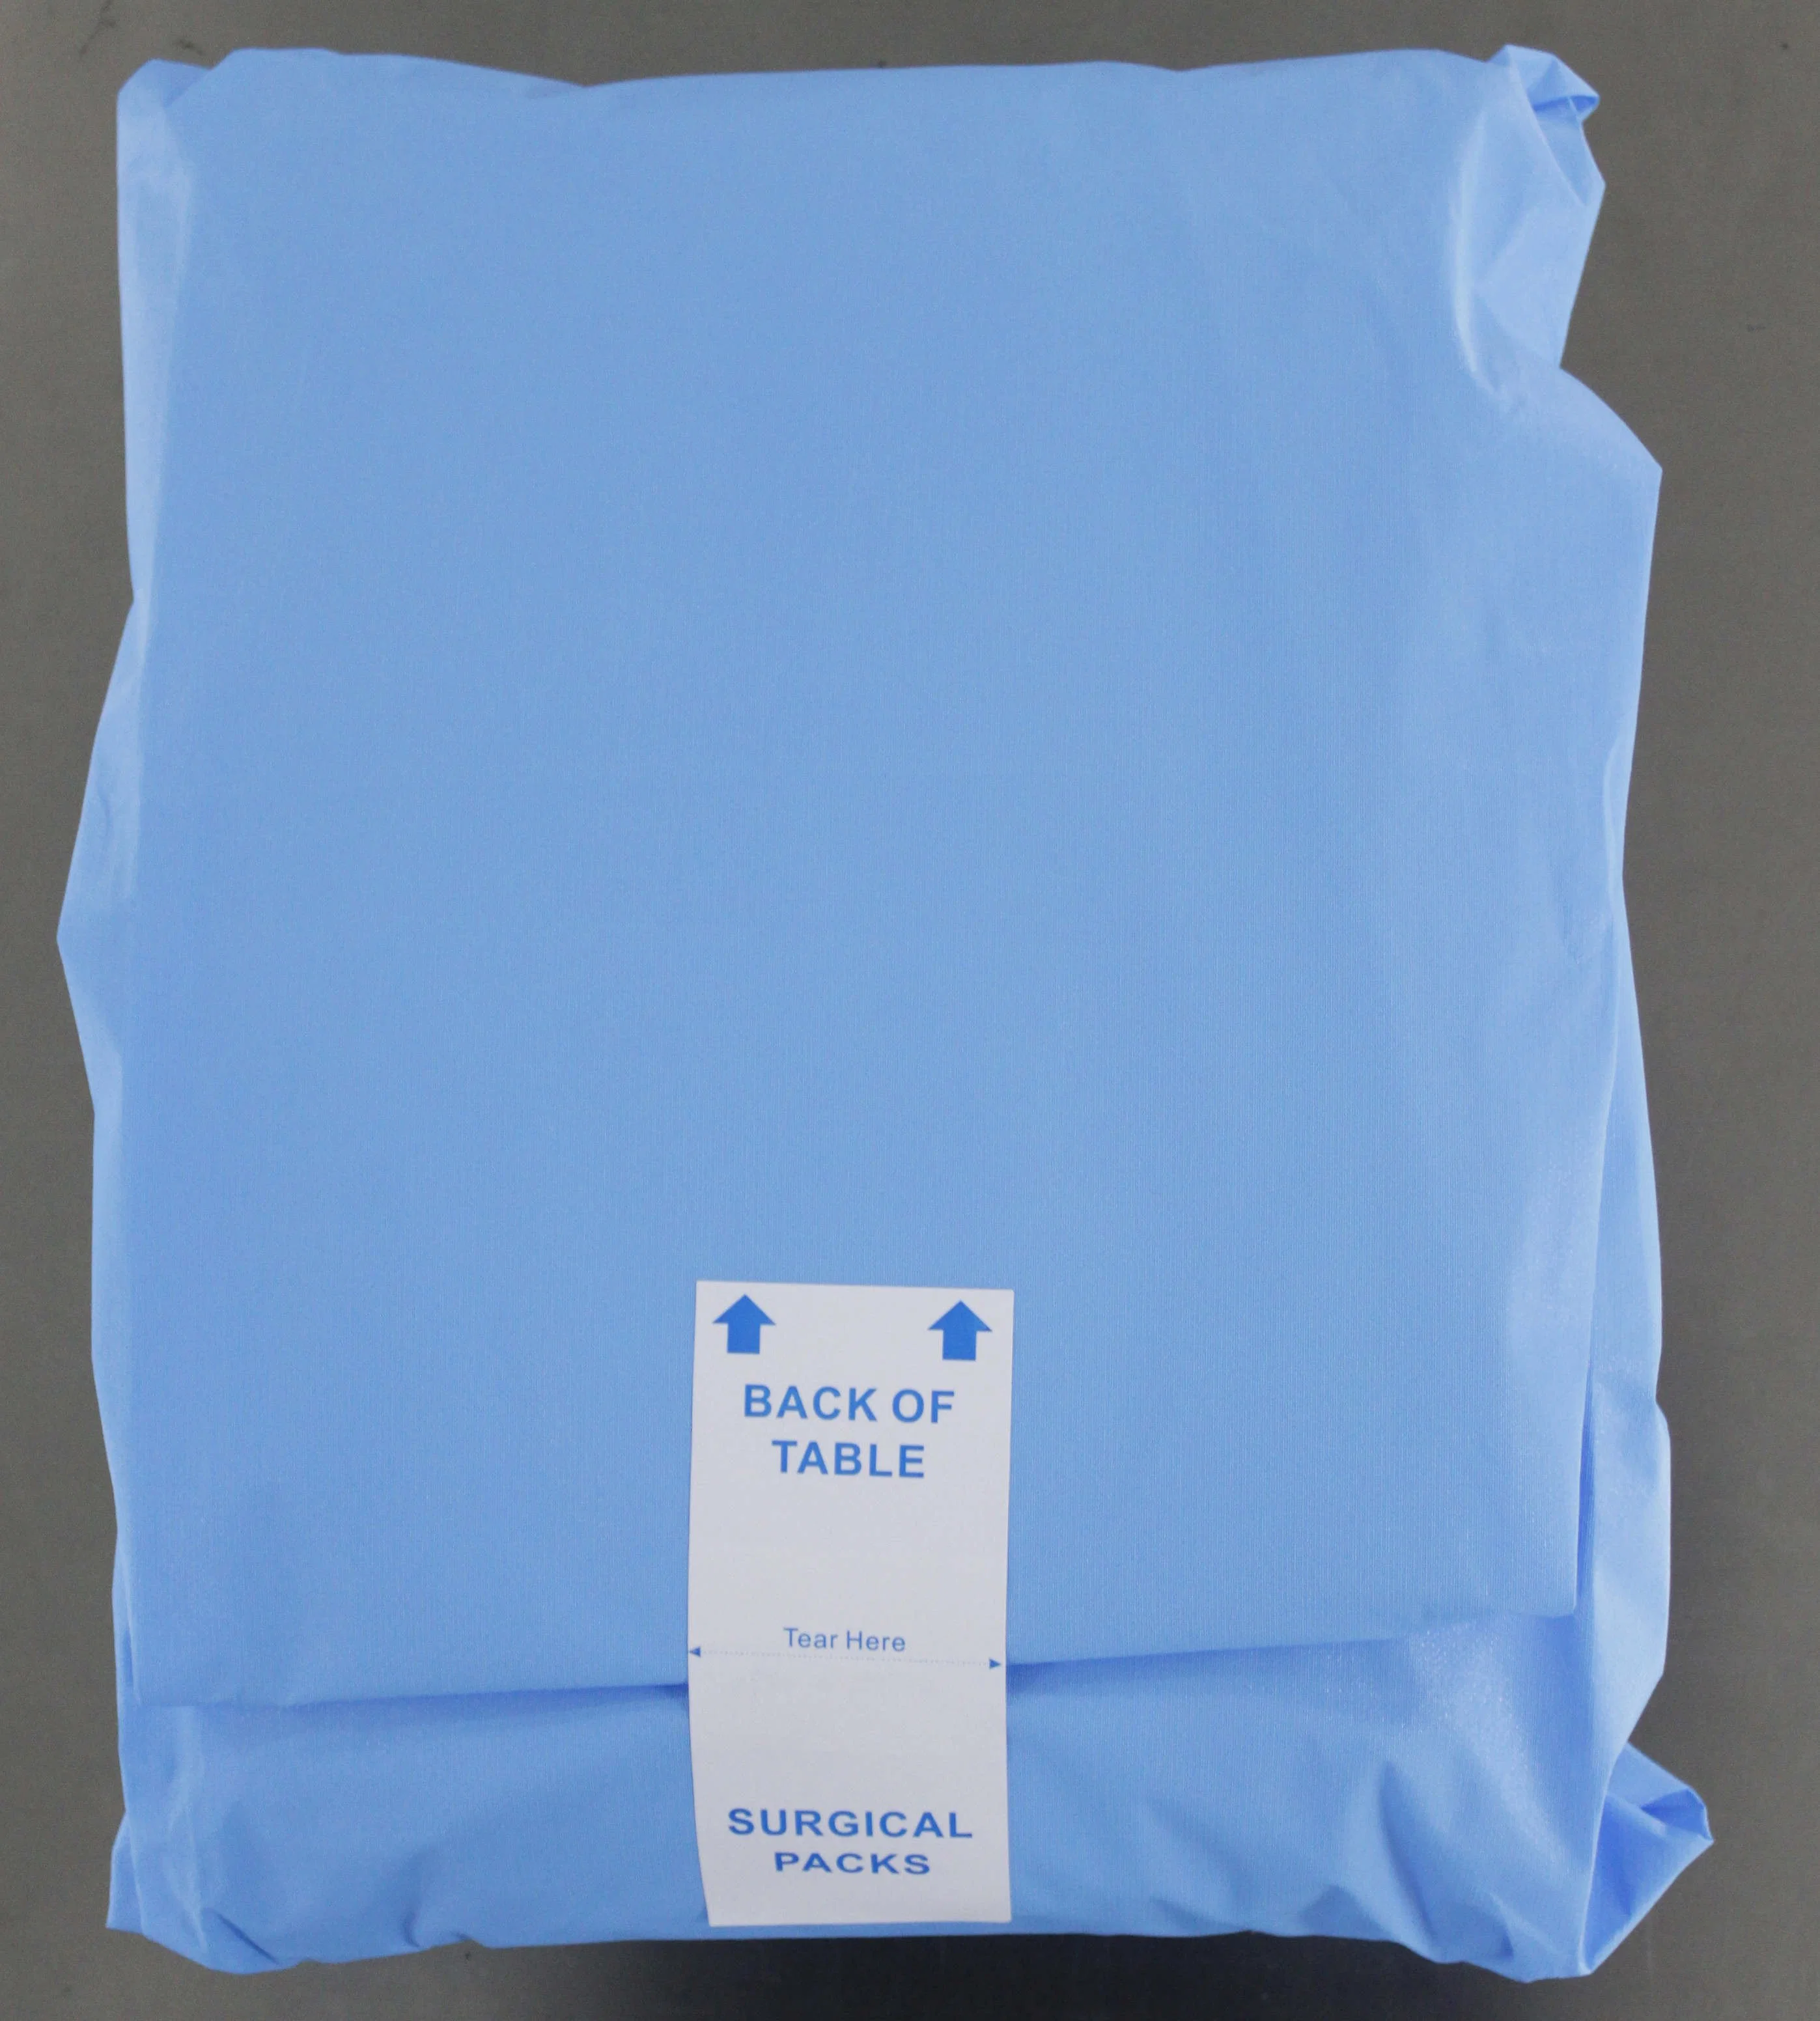 Emballage pour drape universel stérile pour chirurgie générale à usage hospitalier